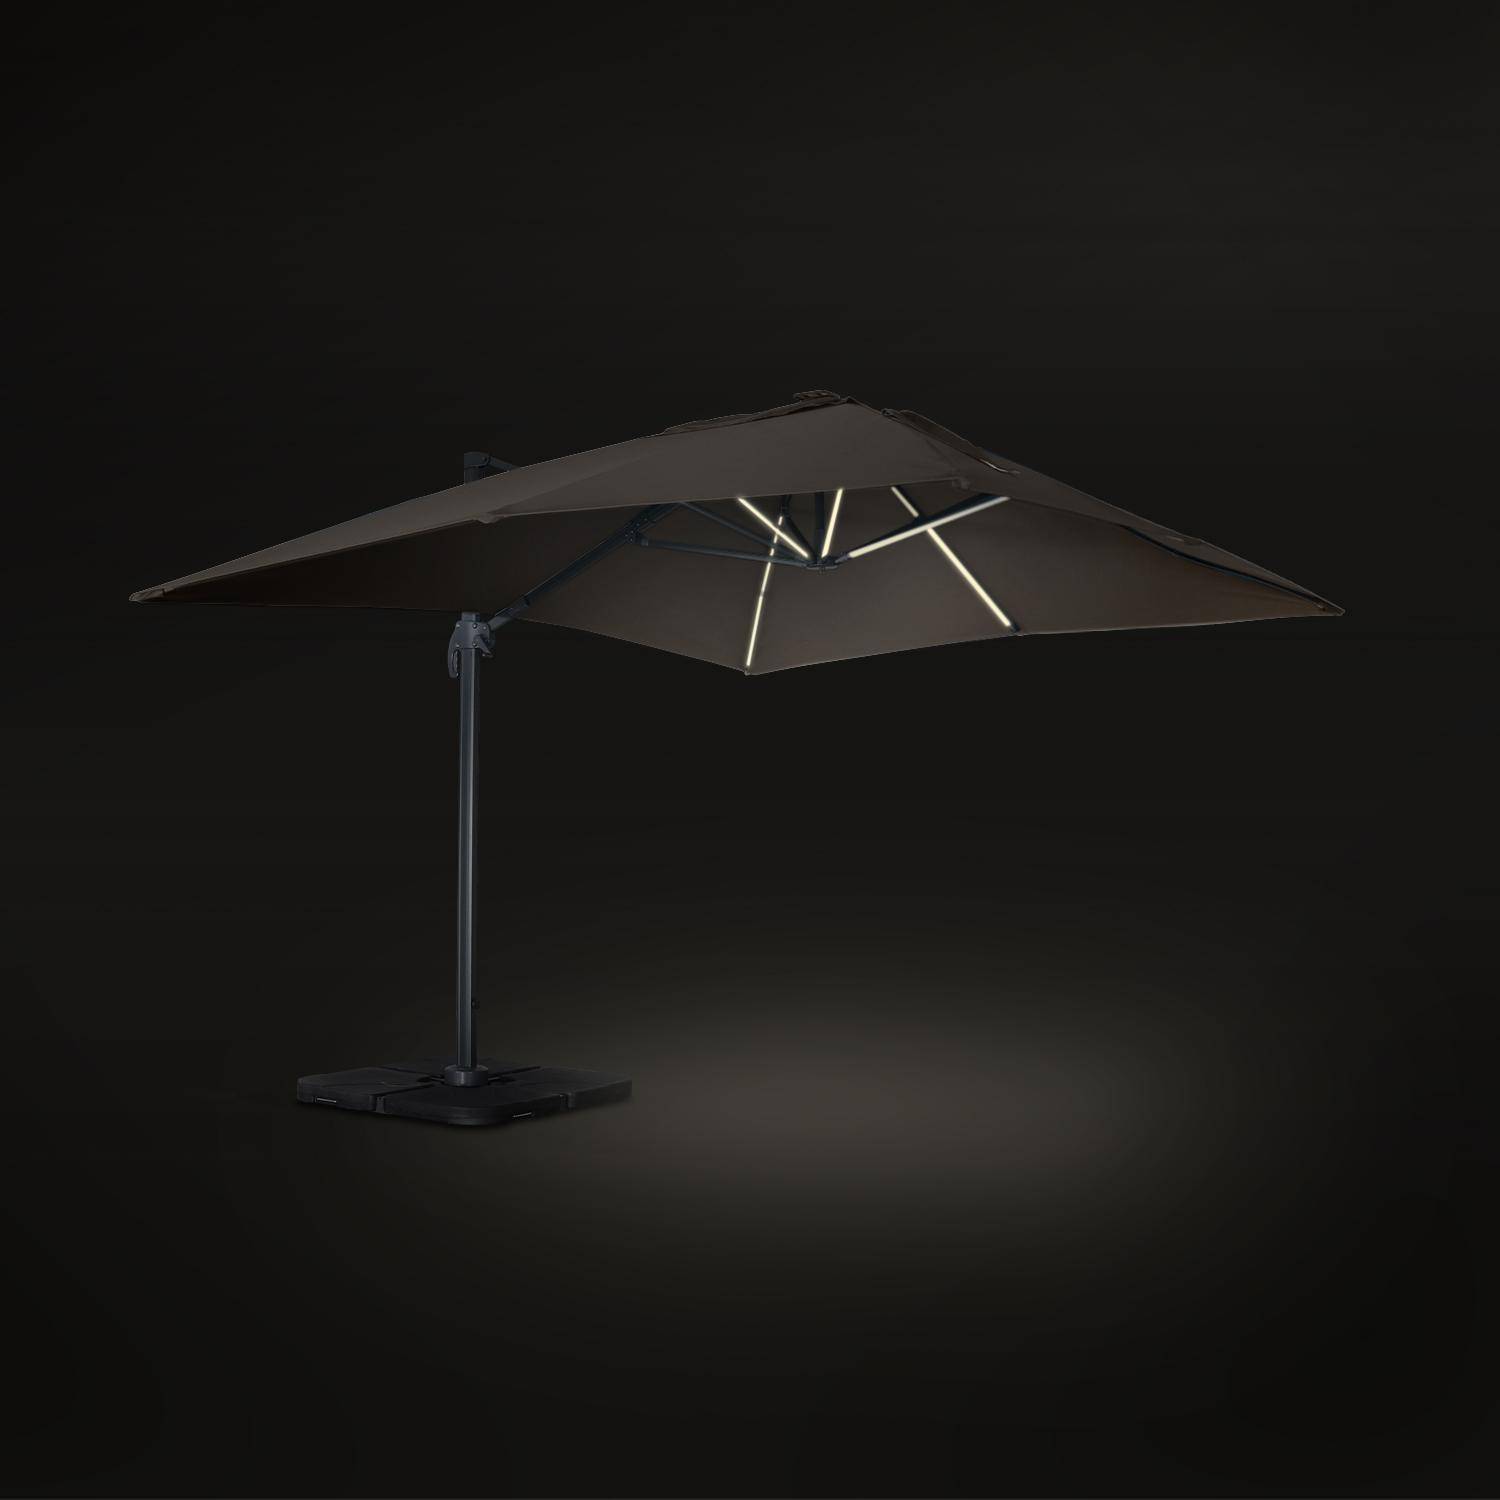 Luce, parasol déporté haut de gamme 3x4m Photo4